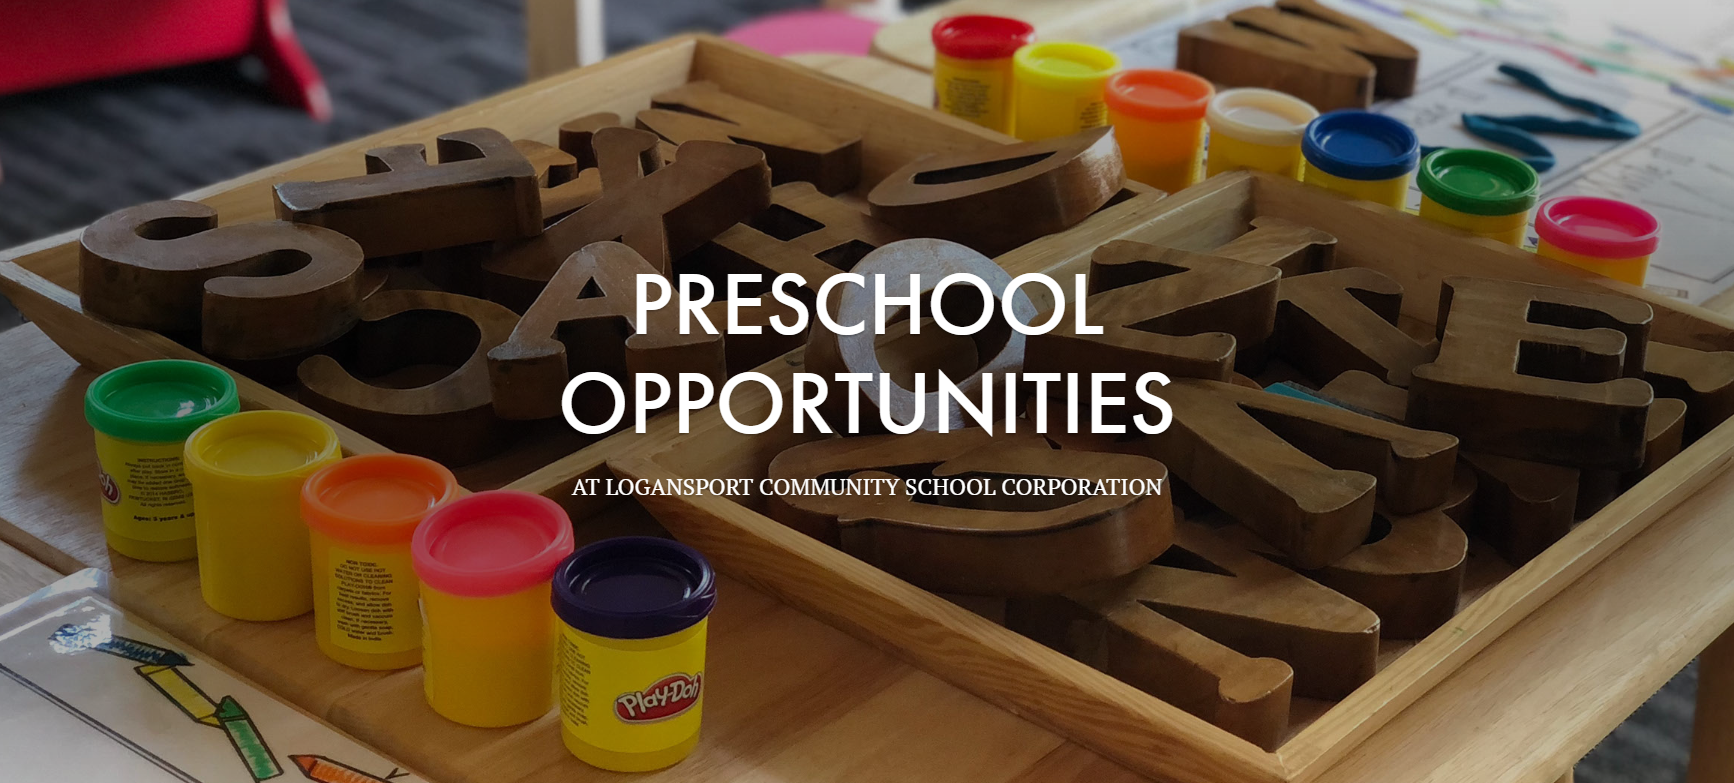 Preschool Opportunities